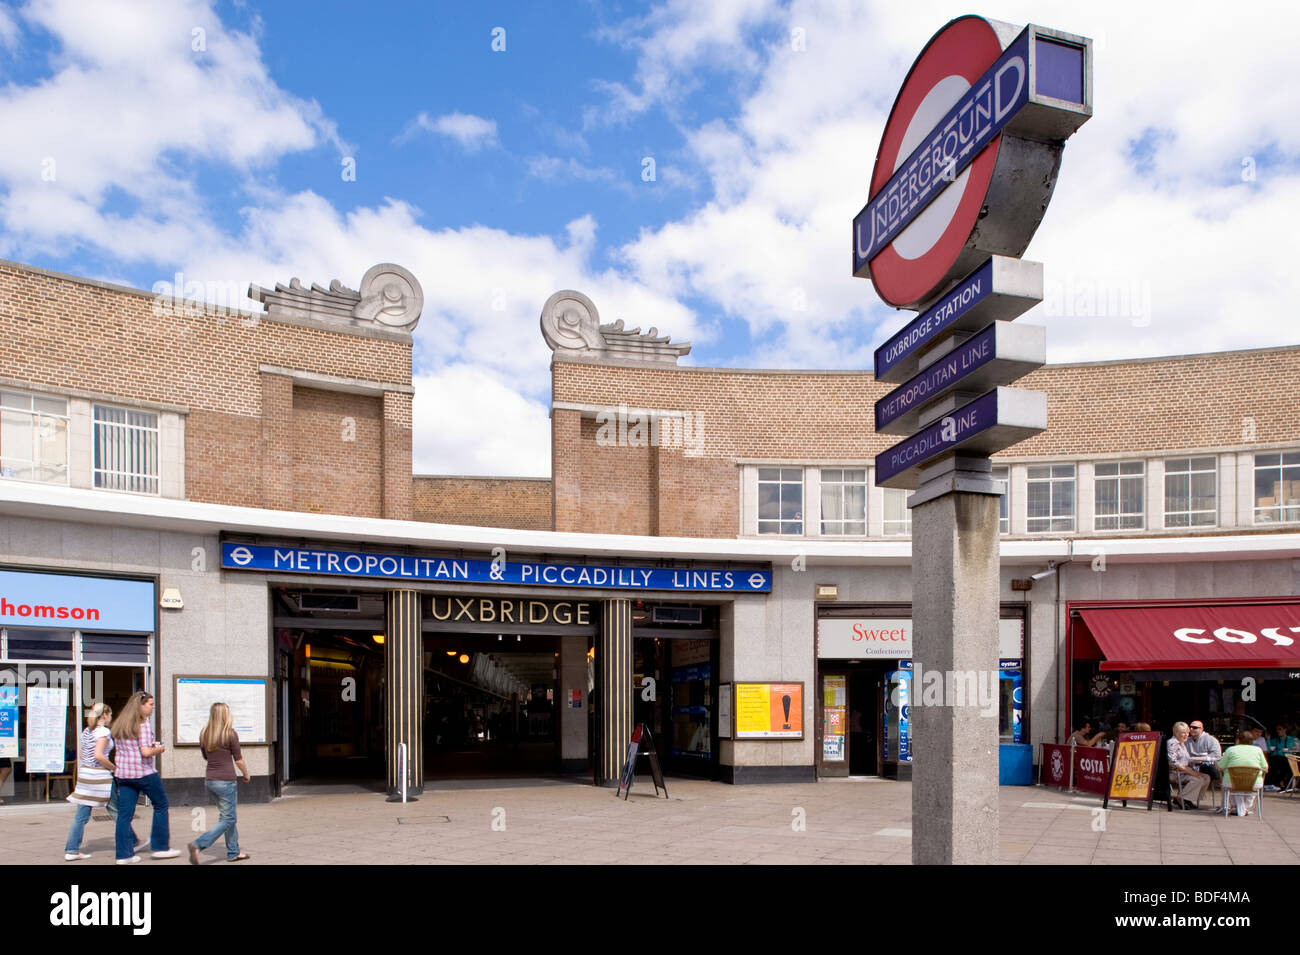 Underground Station, Uxbridge, Middlesex, United Kingdom Stock Photo